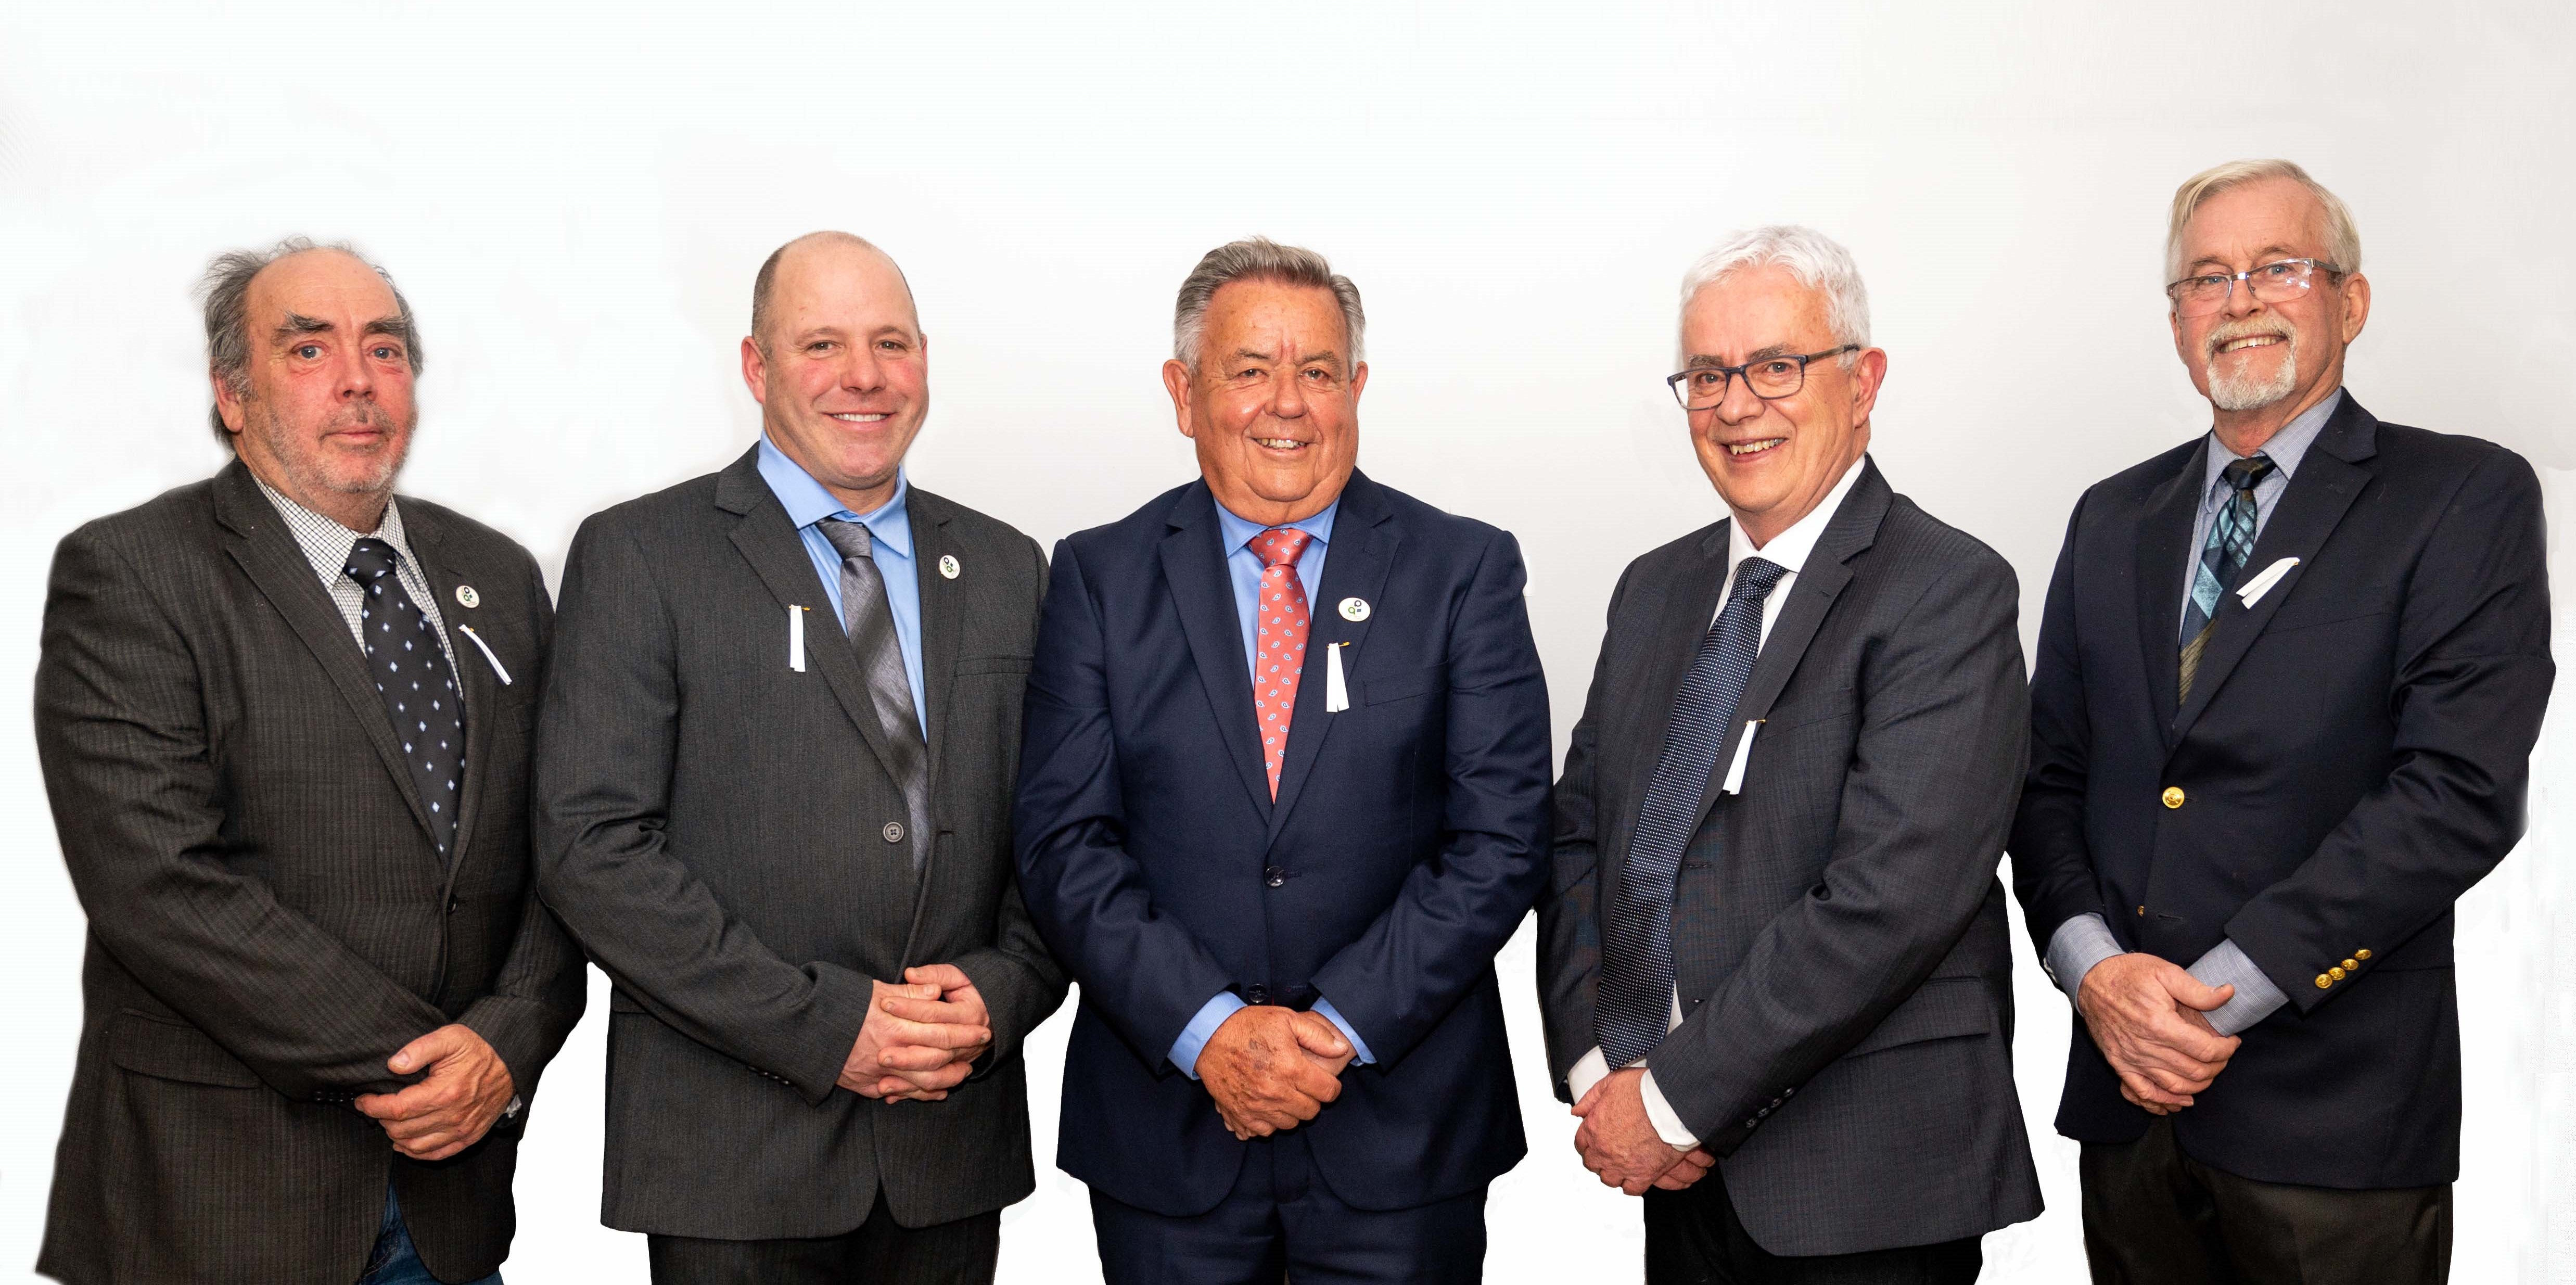 2022-2026 Municipal Council from left to right: Ian Walker (councillor), Antoni Viau (councillor), Yves Laviolette (mayor), Benoit Lamarche (councillor), Jean-Pierre Cadieux (councillor)